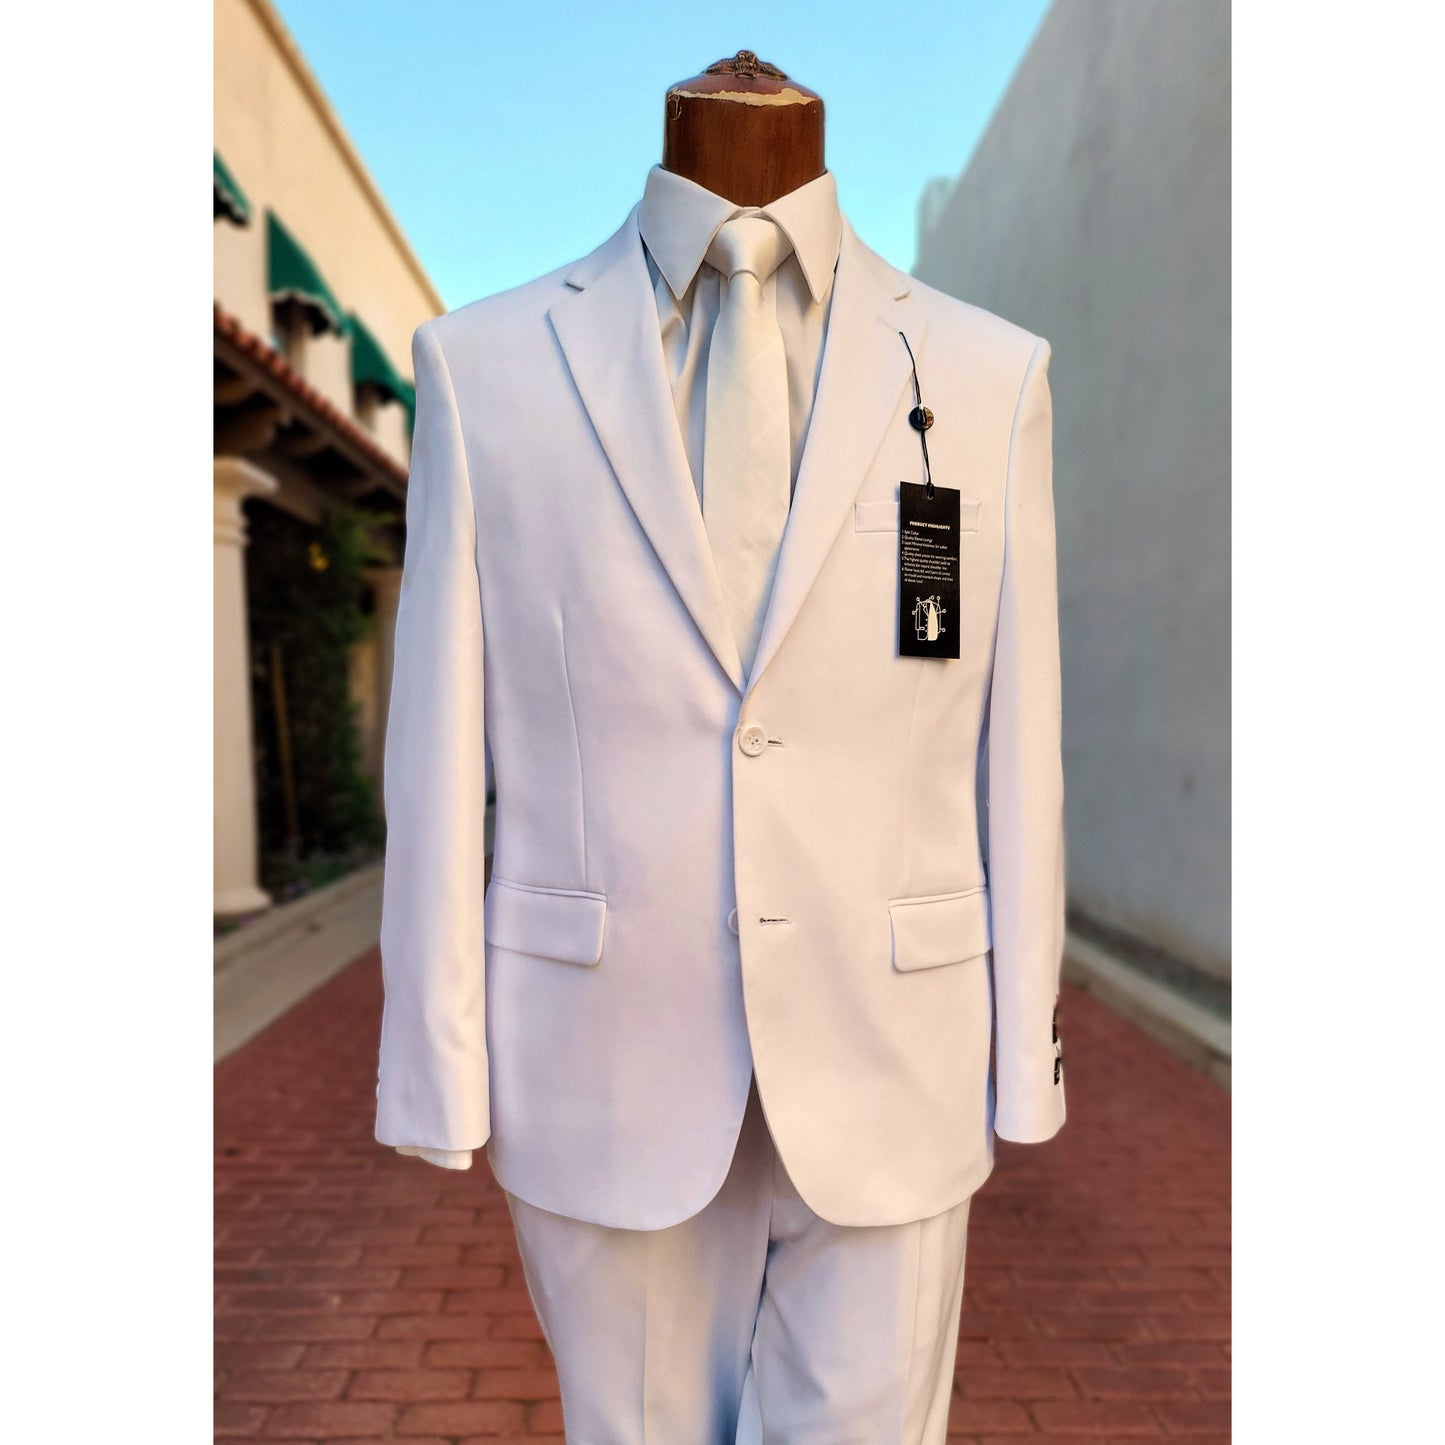 White Suit (1-pant)